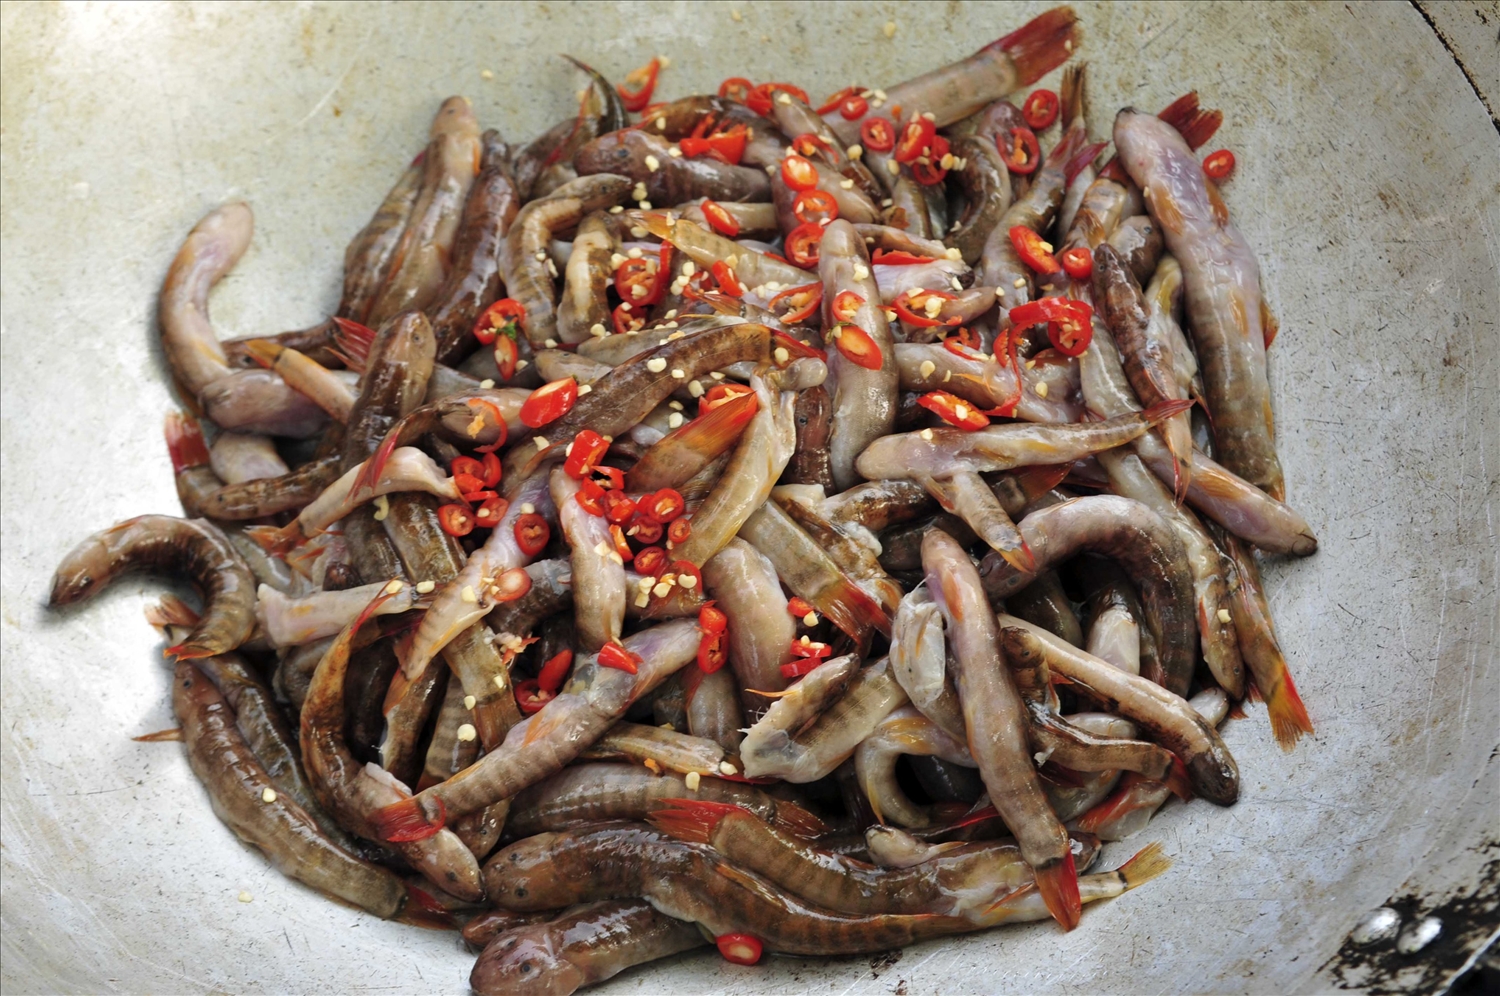 Cá bống vùi tro, đặc sản hấp dẫn, ăn một lần là nhớ đến từ Lai Châu - Ảnh 3